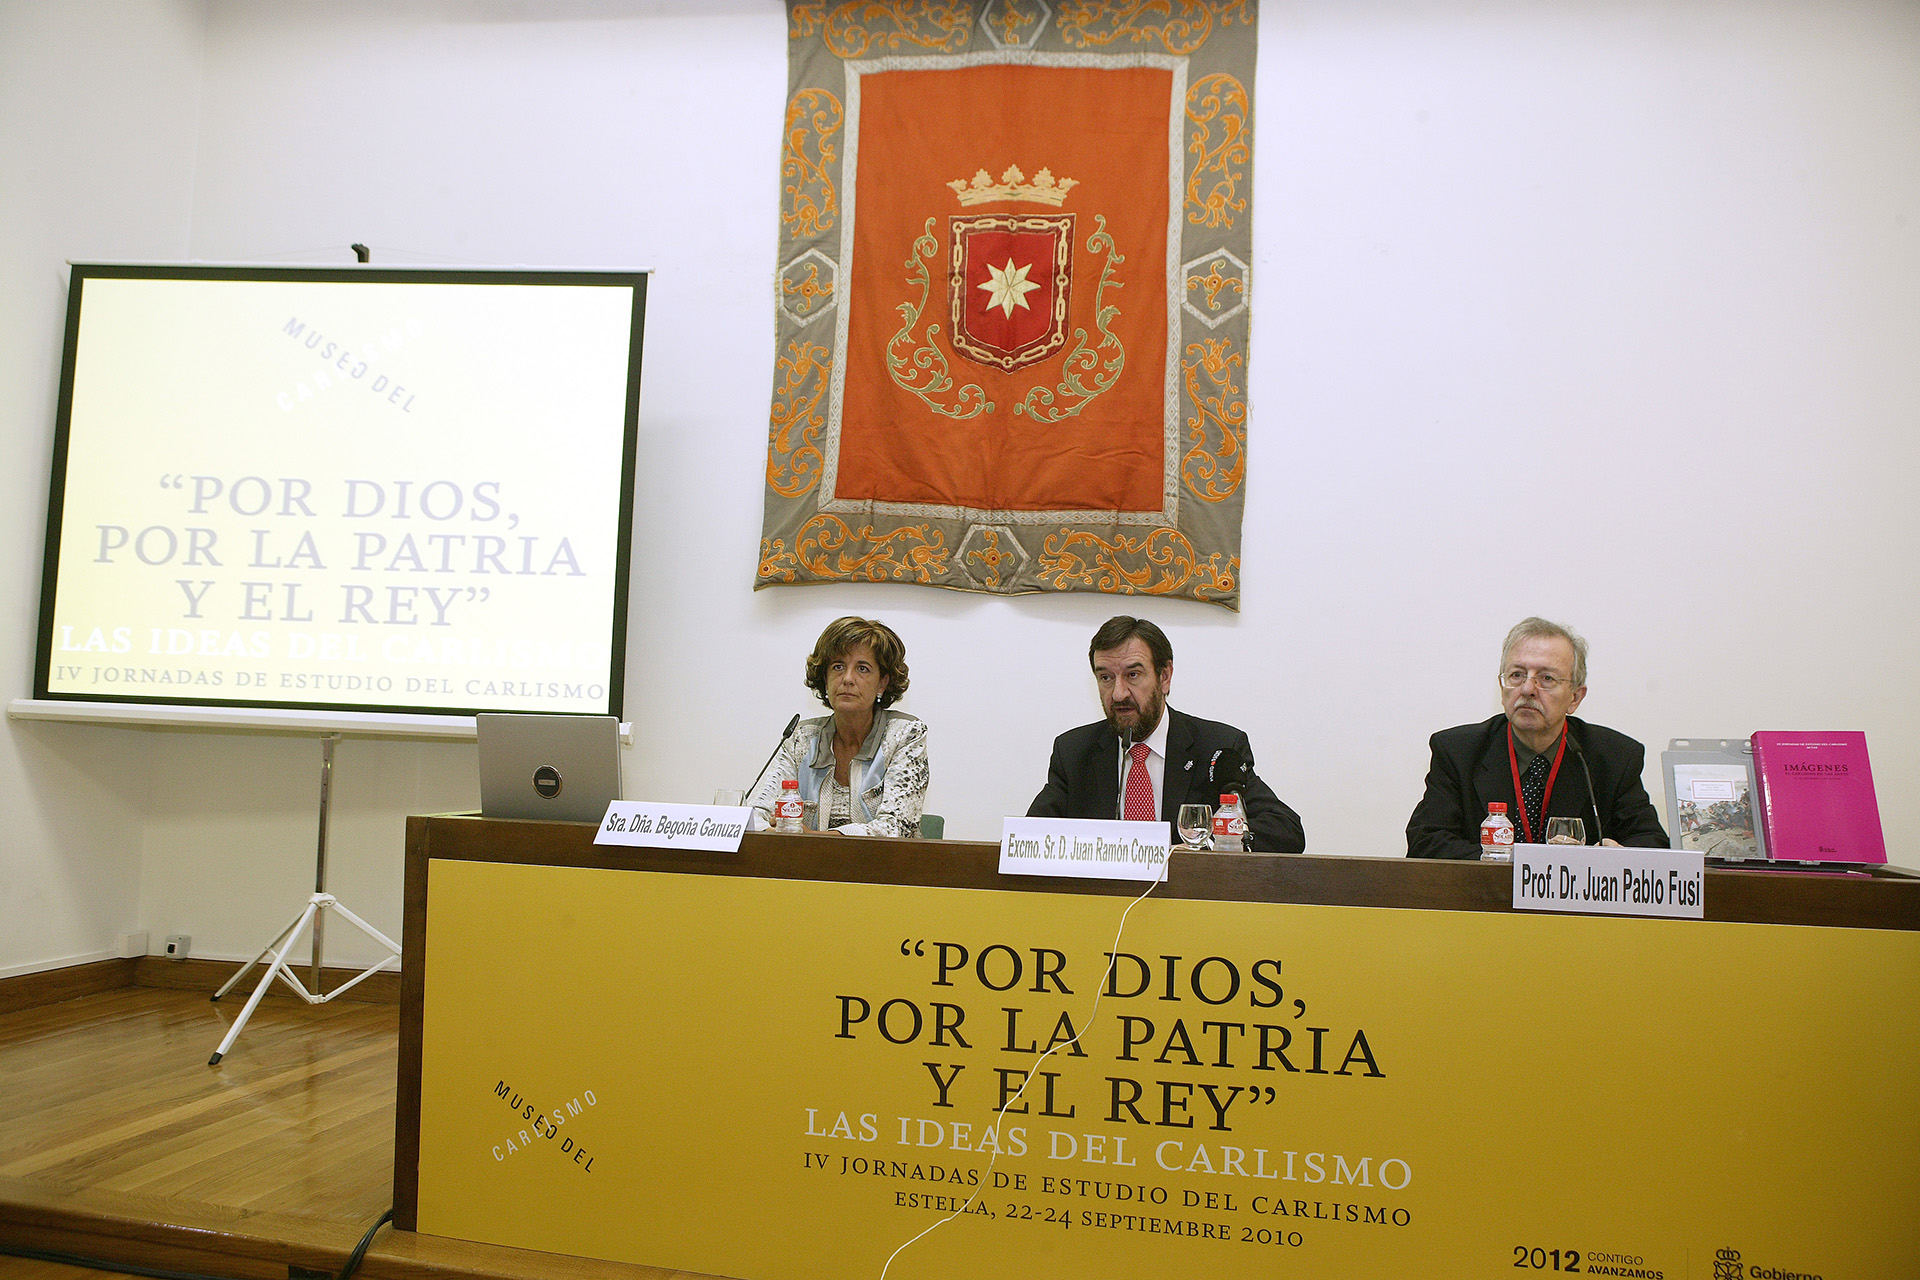 Inauguración de las IV Jornadas de Estudio del Carlismo. Septiembre 2010.